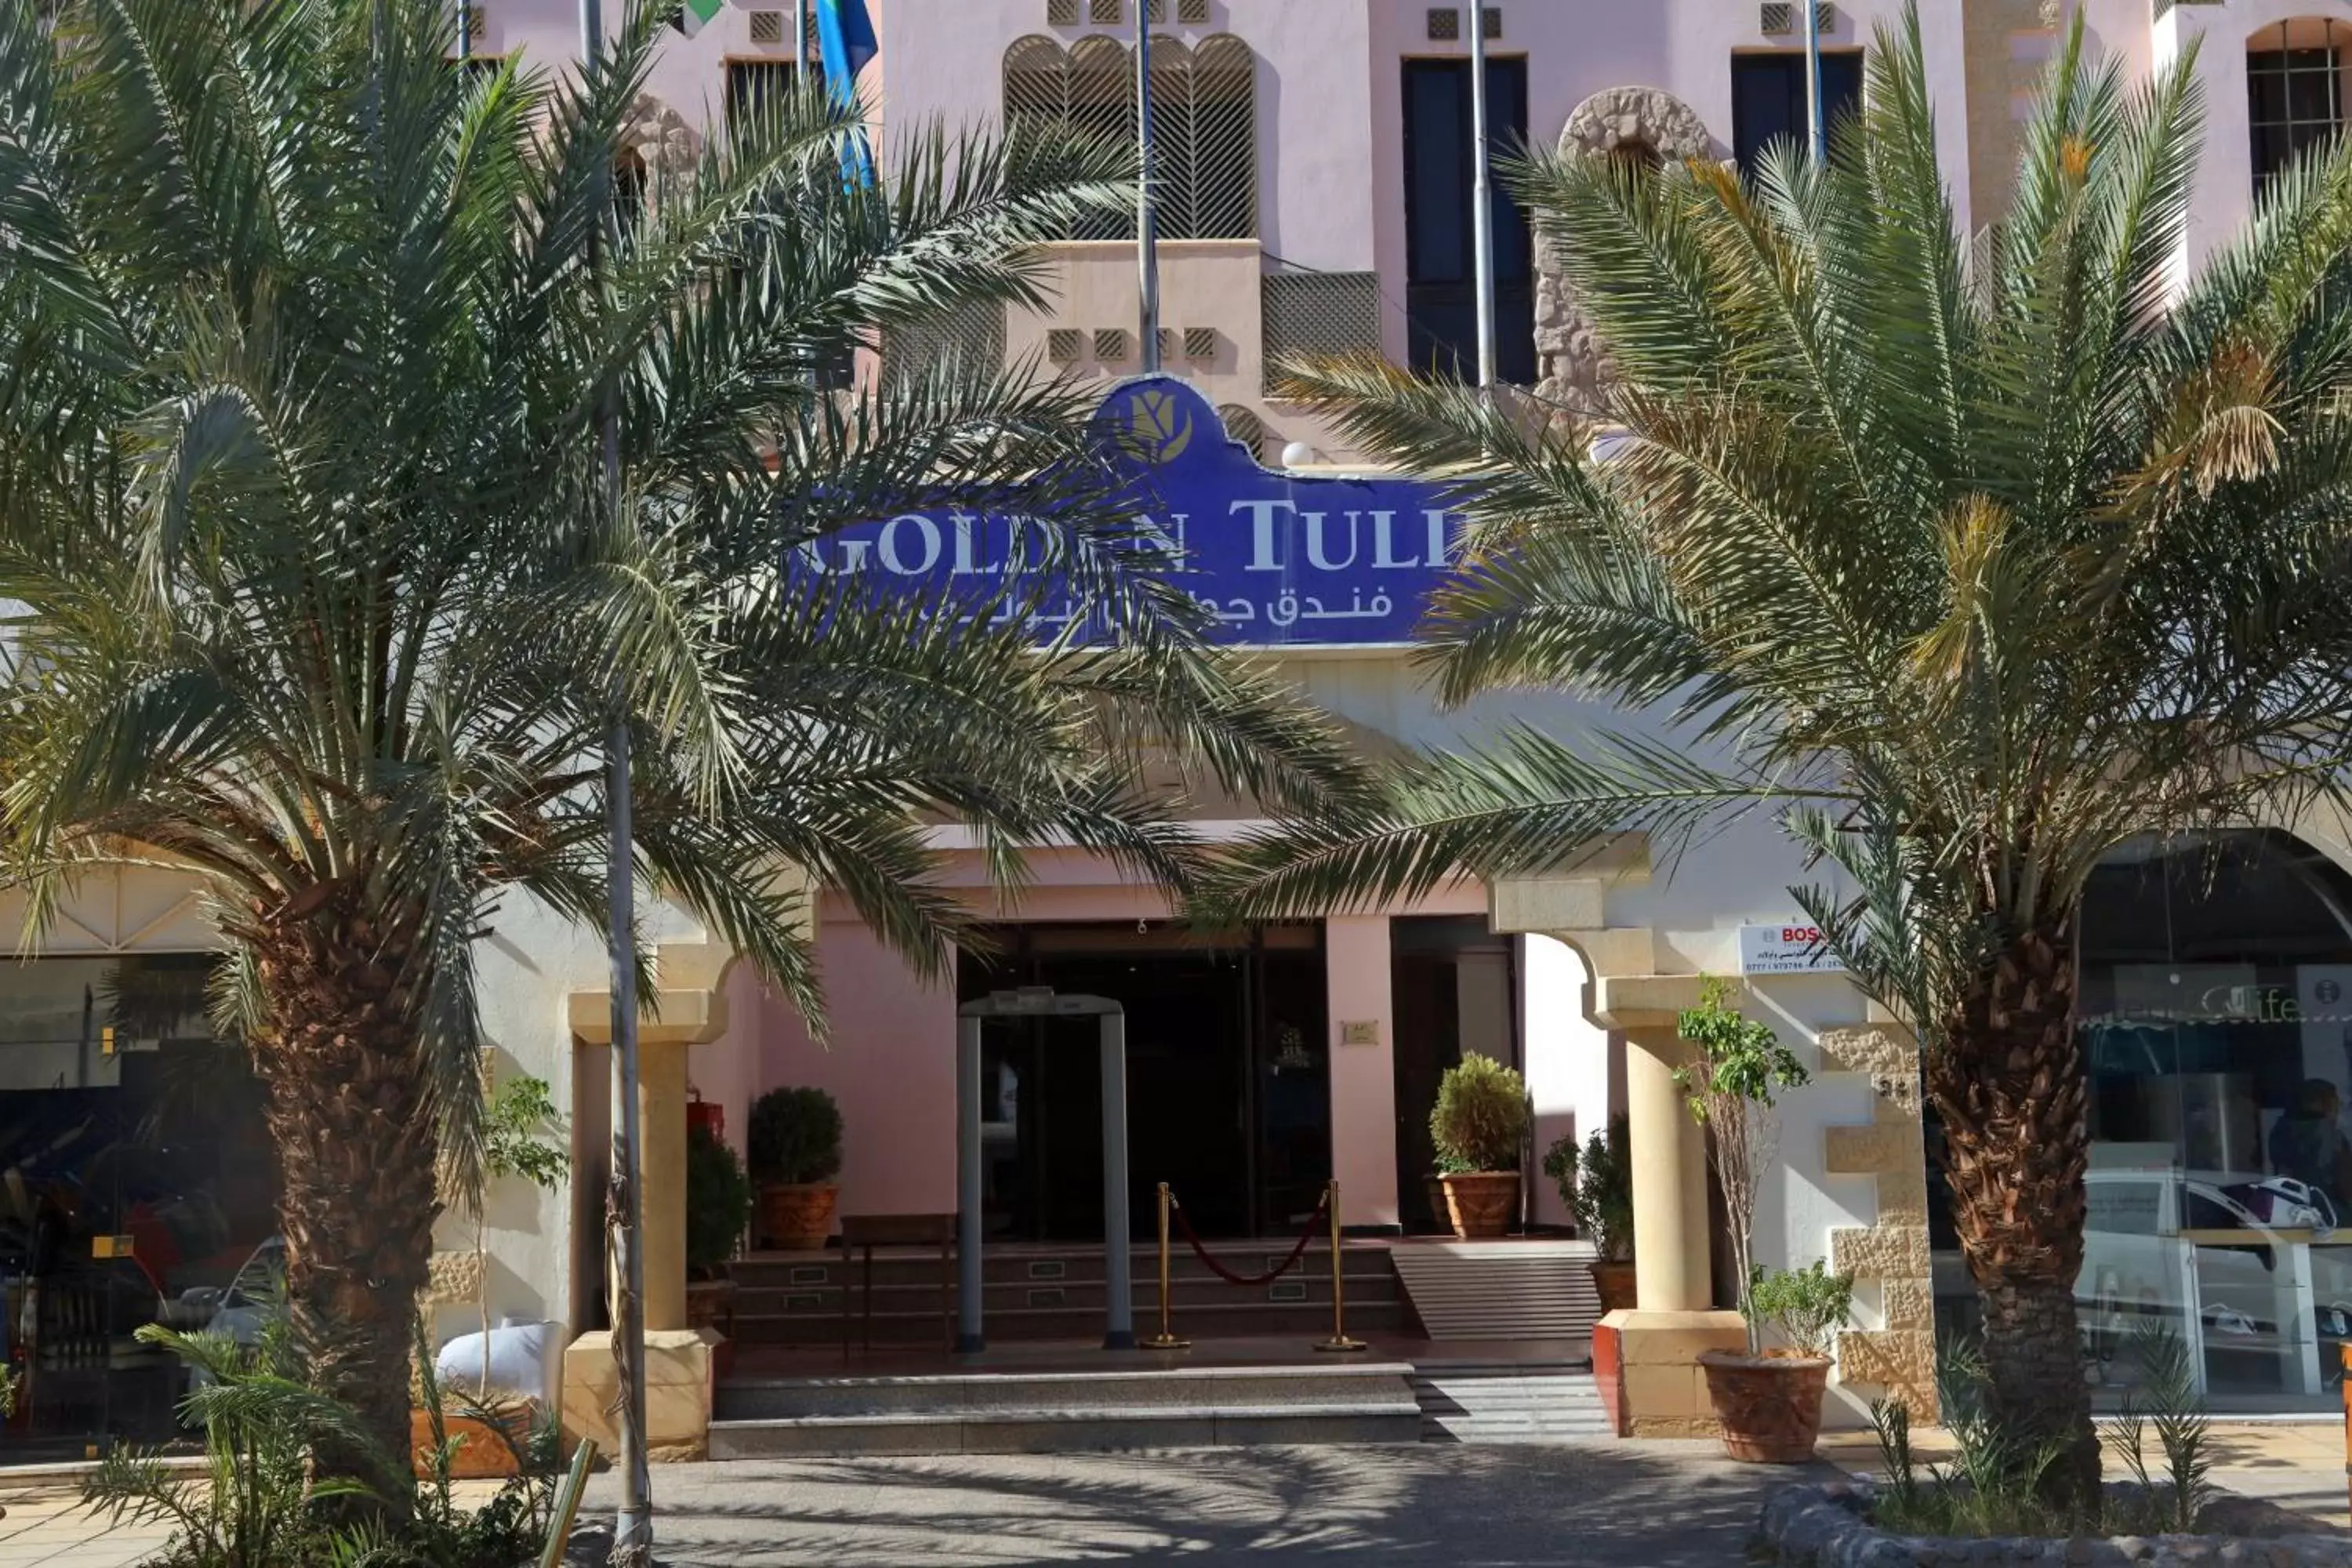 Facade/entrance in Golden Tulip Aqaba